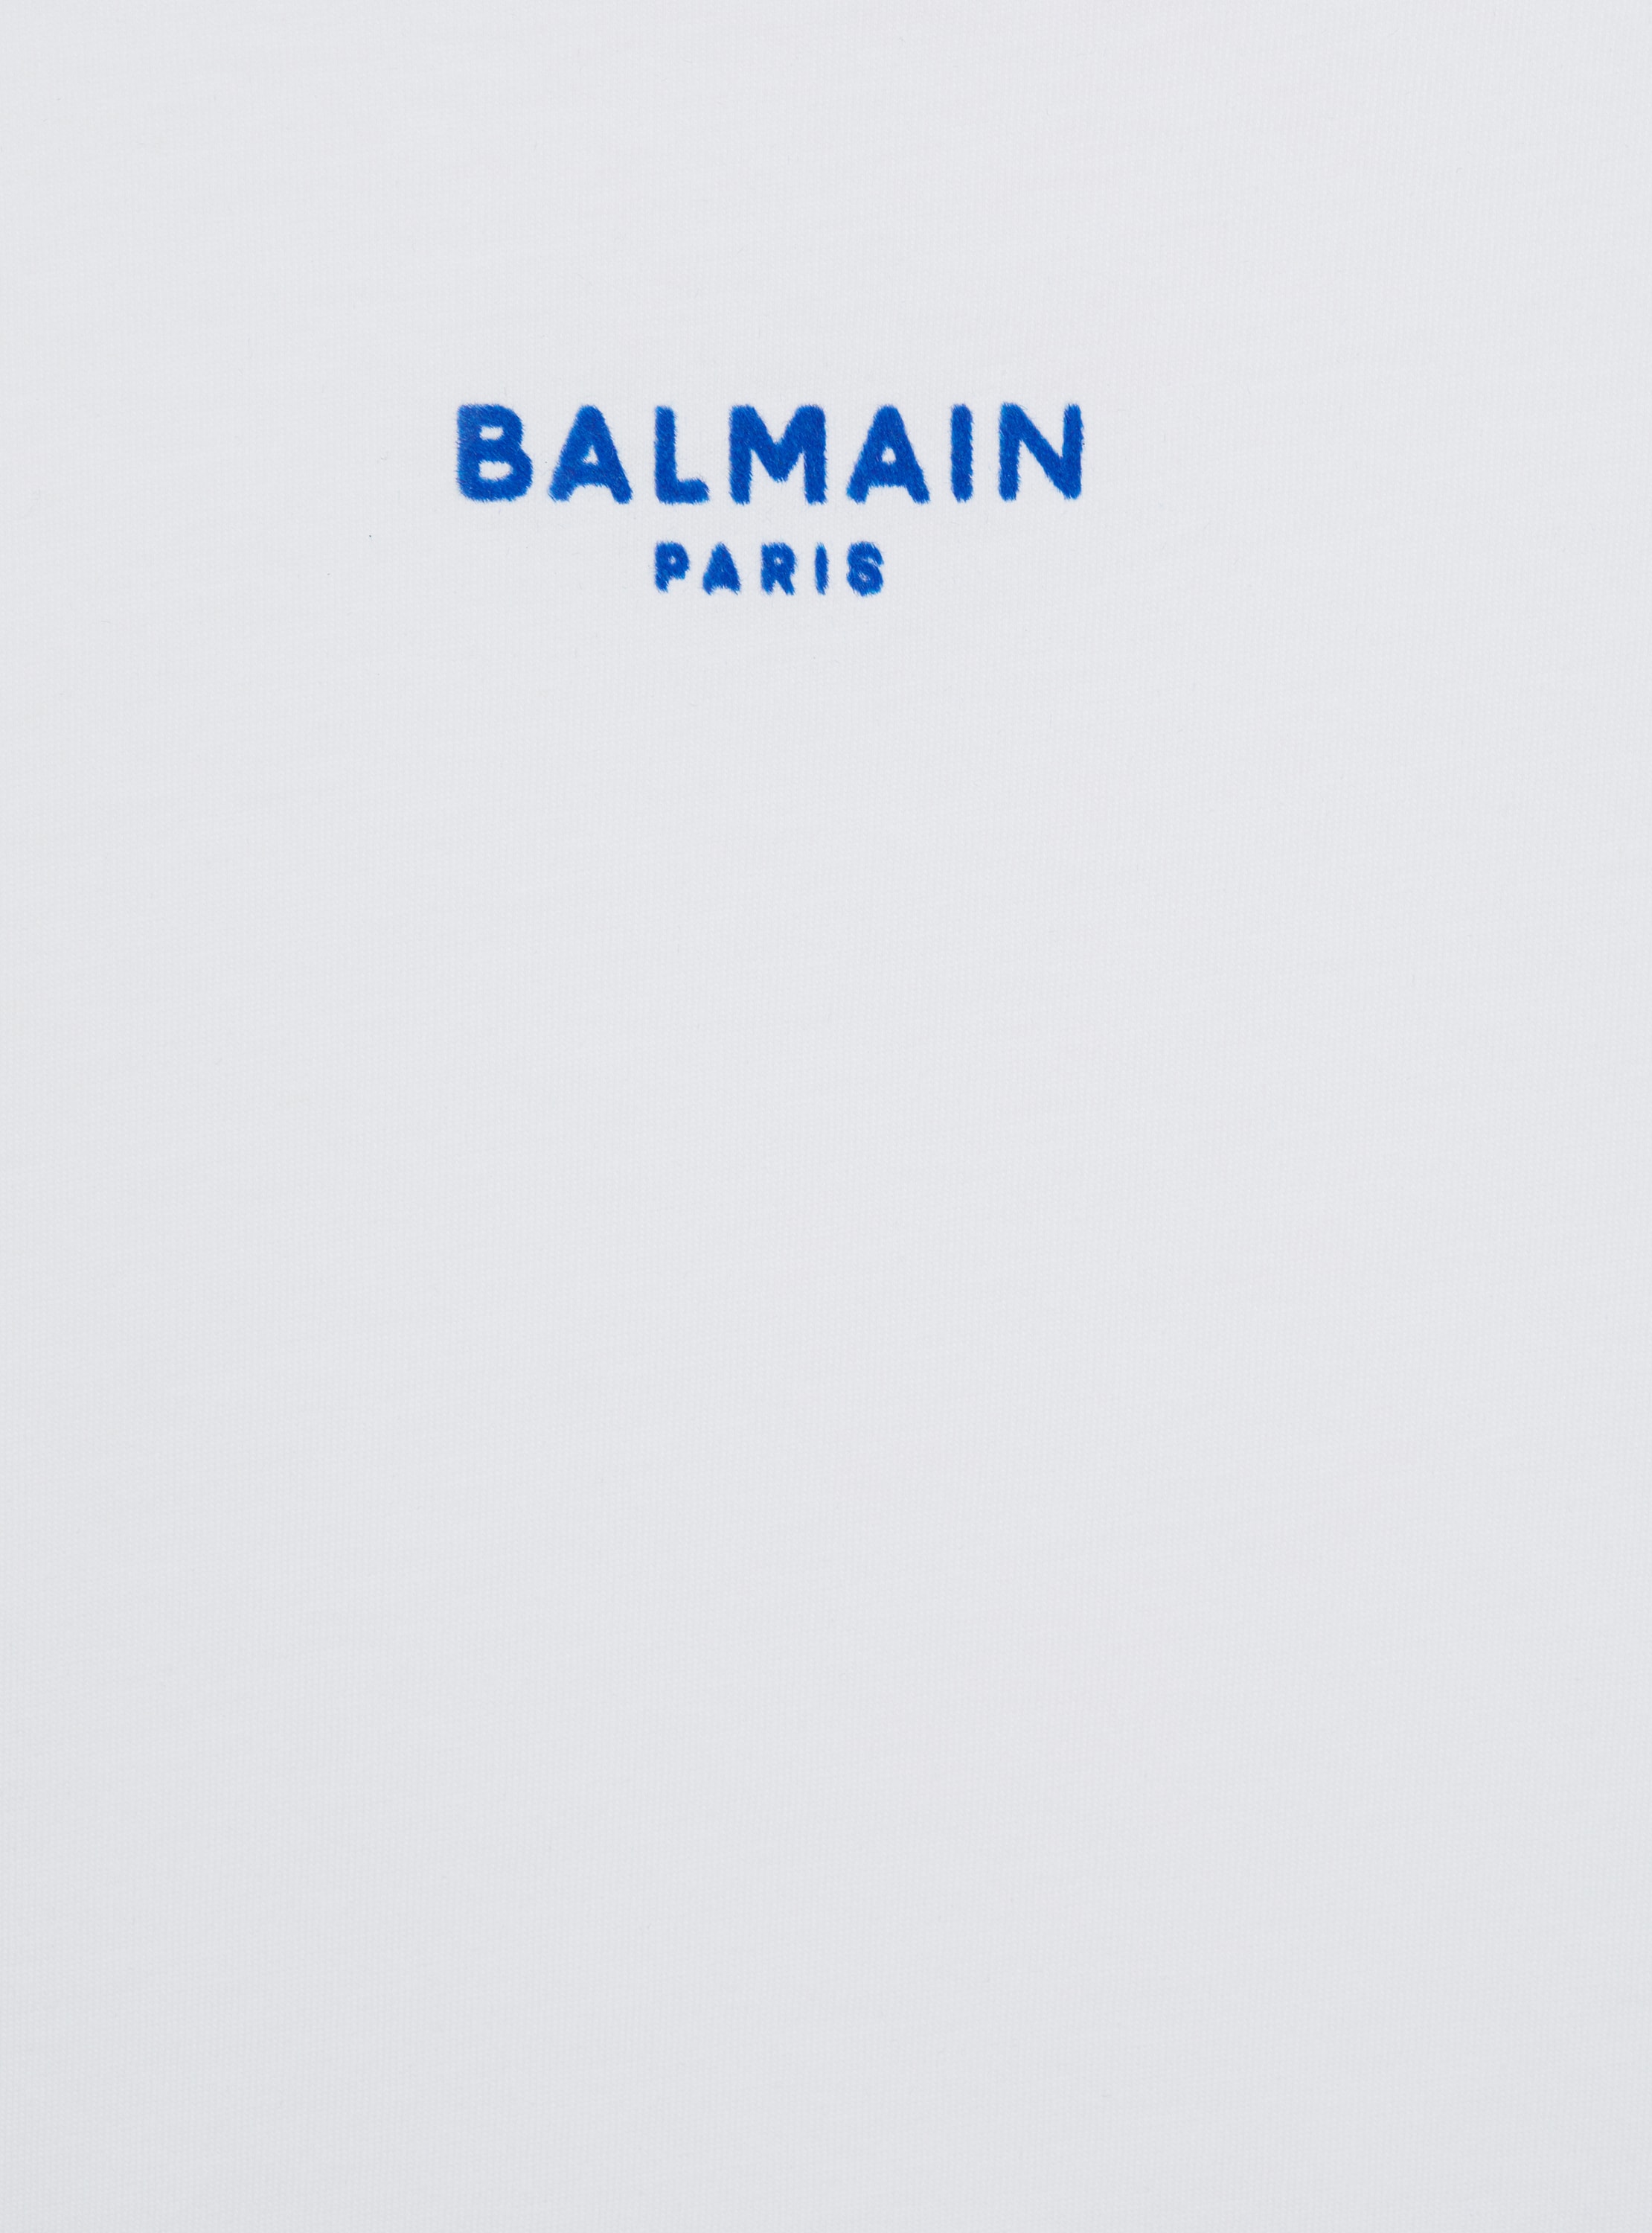 Camiseta con el logotipo de Balmain Paris serigrafiado